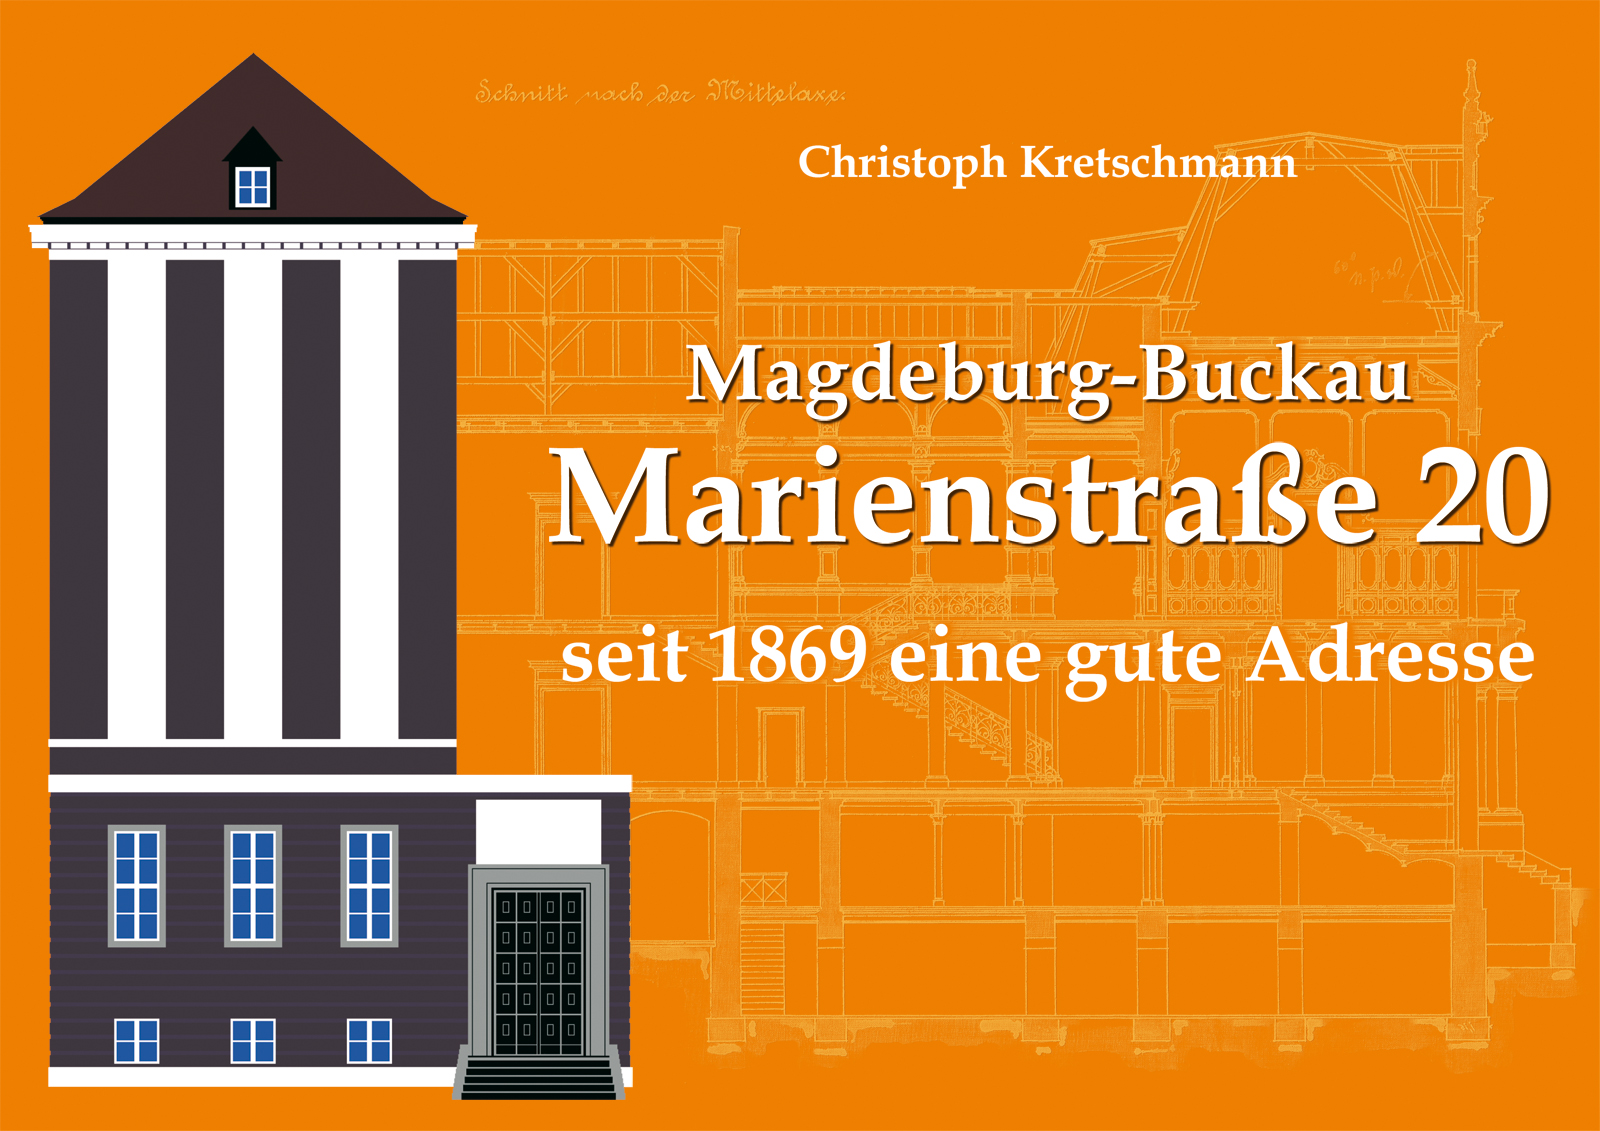 Magdeburg-Buckau - Marienstraße 20 seit 1869 eine gute Adresse